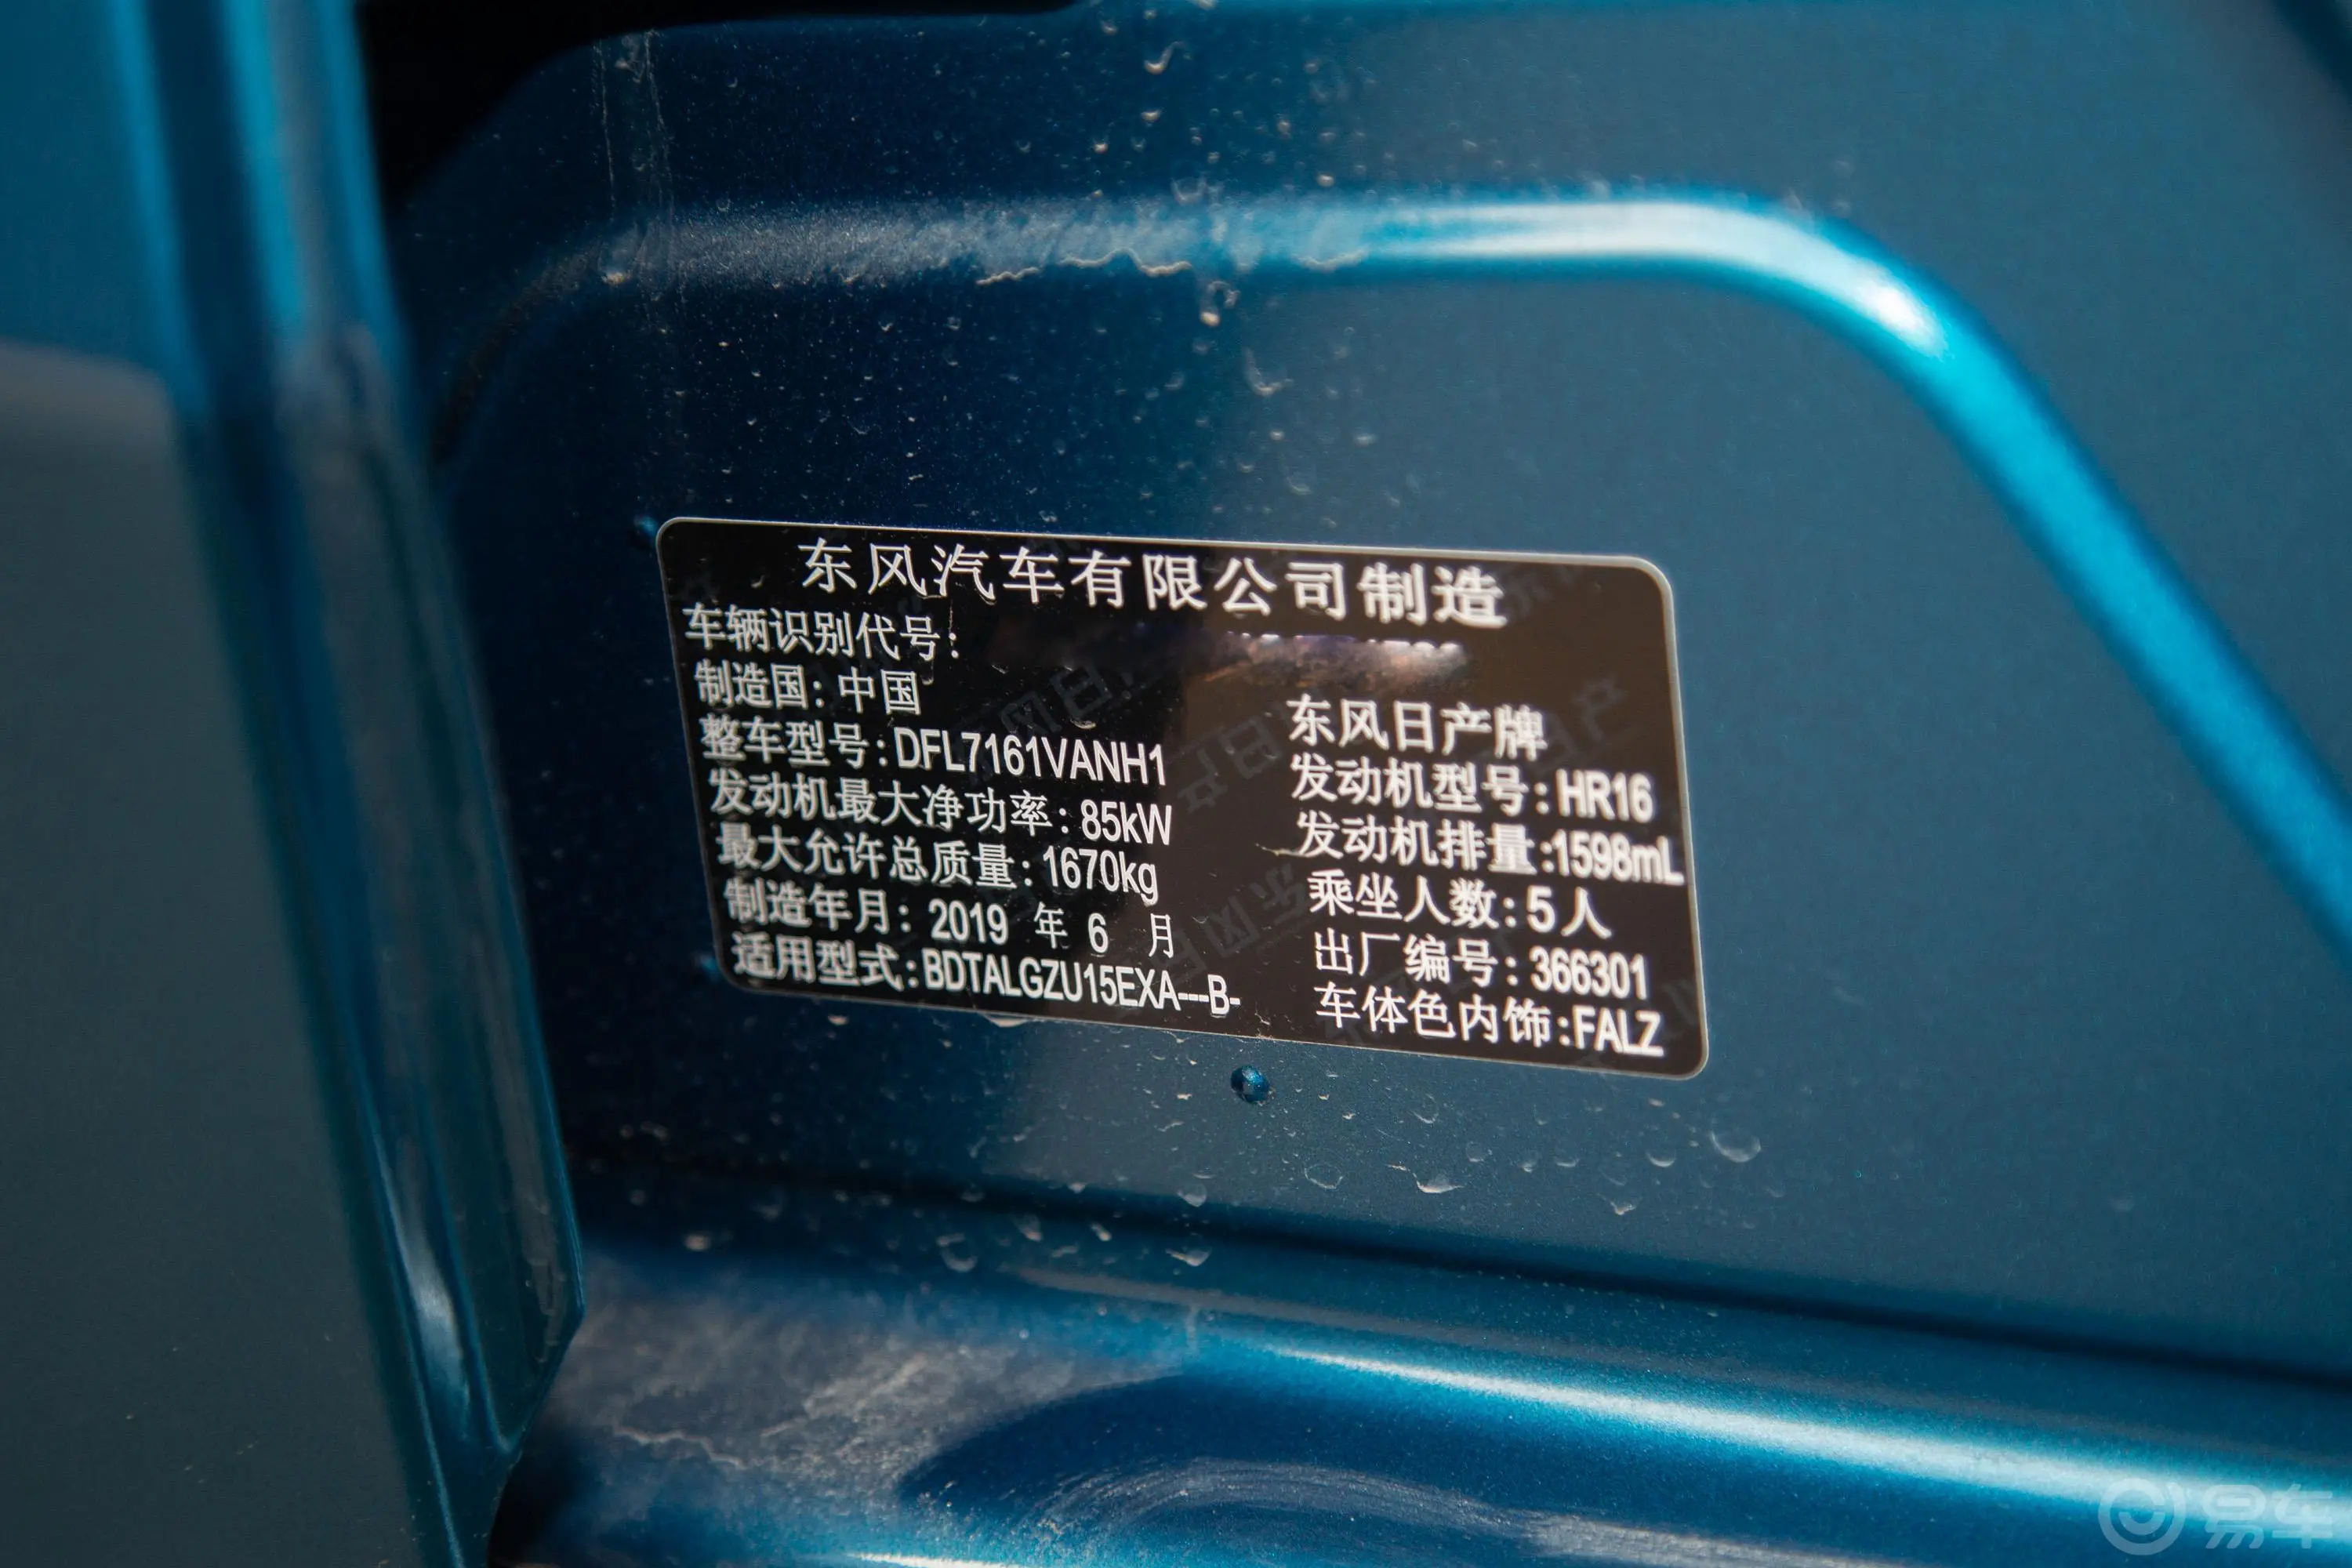 蓝鸟1.6L CVT 炫酷版车辆信息铭牌